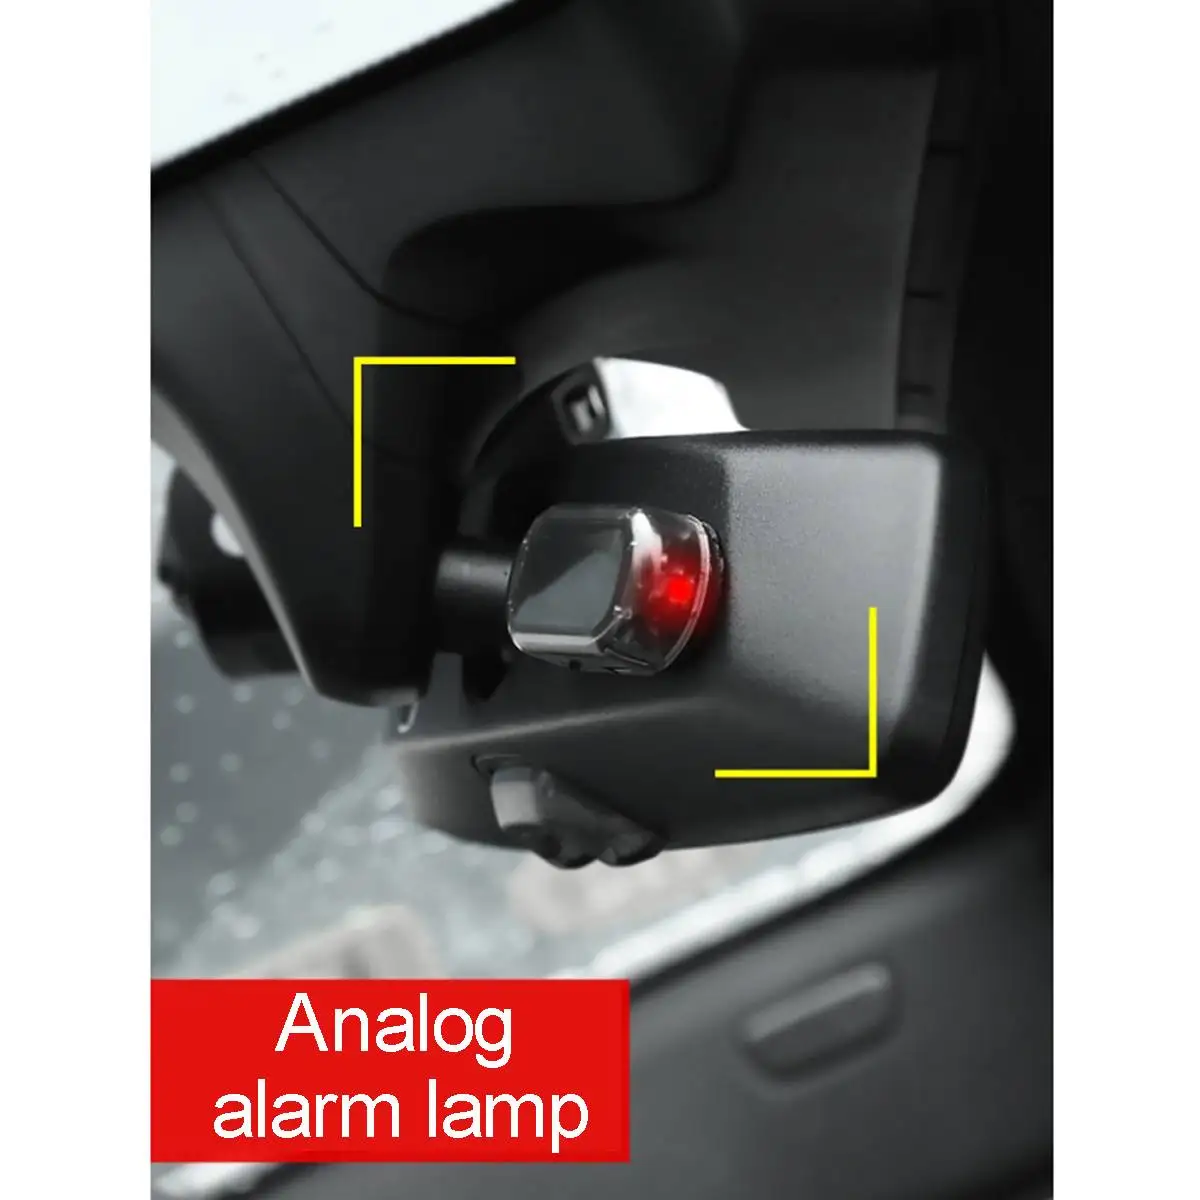 USB Предупреждение ющий Противоугонный светильник, все автомобильные сигнальные лампы, автомобильный поддельный охранный светильник на солнечной энергии, имитация сигнализации, светодиодный мигающий светильник